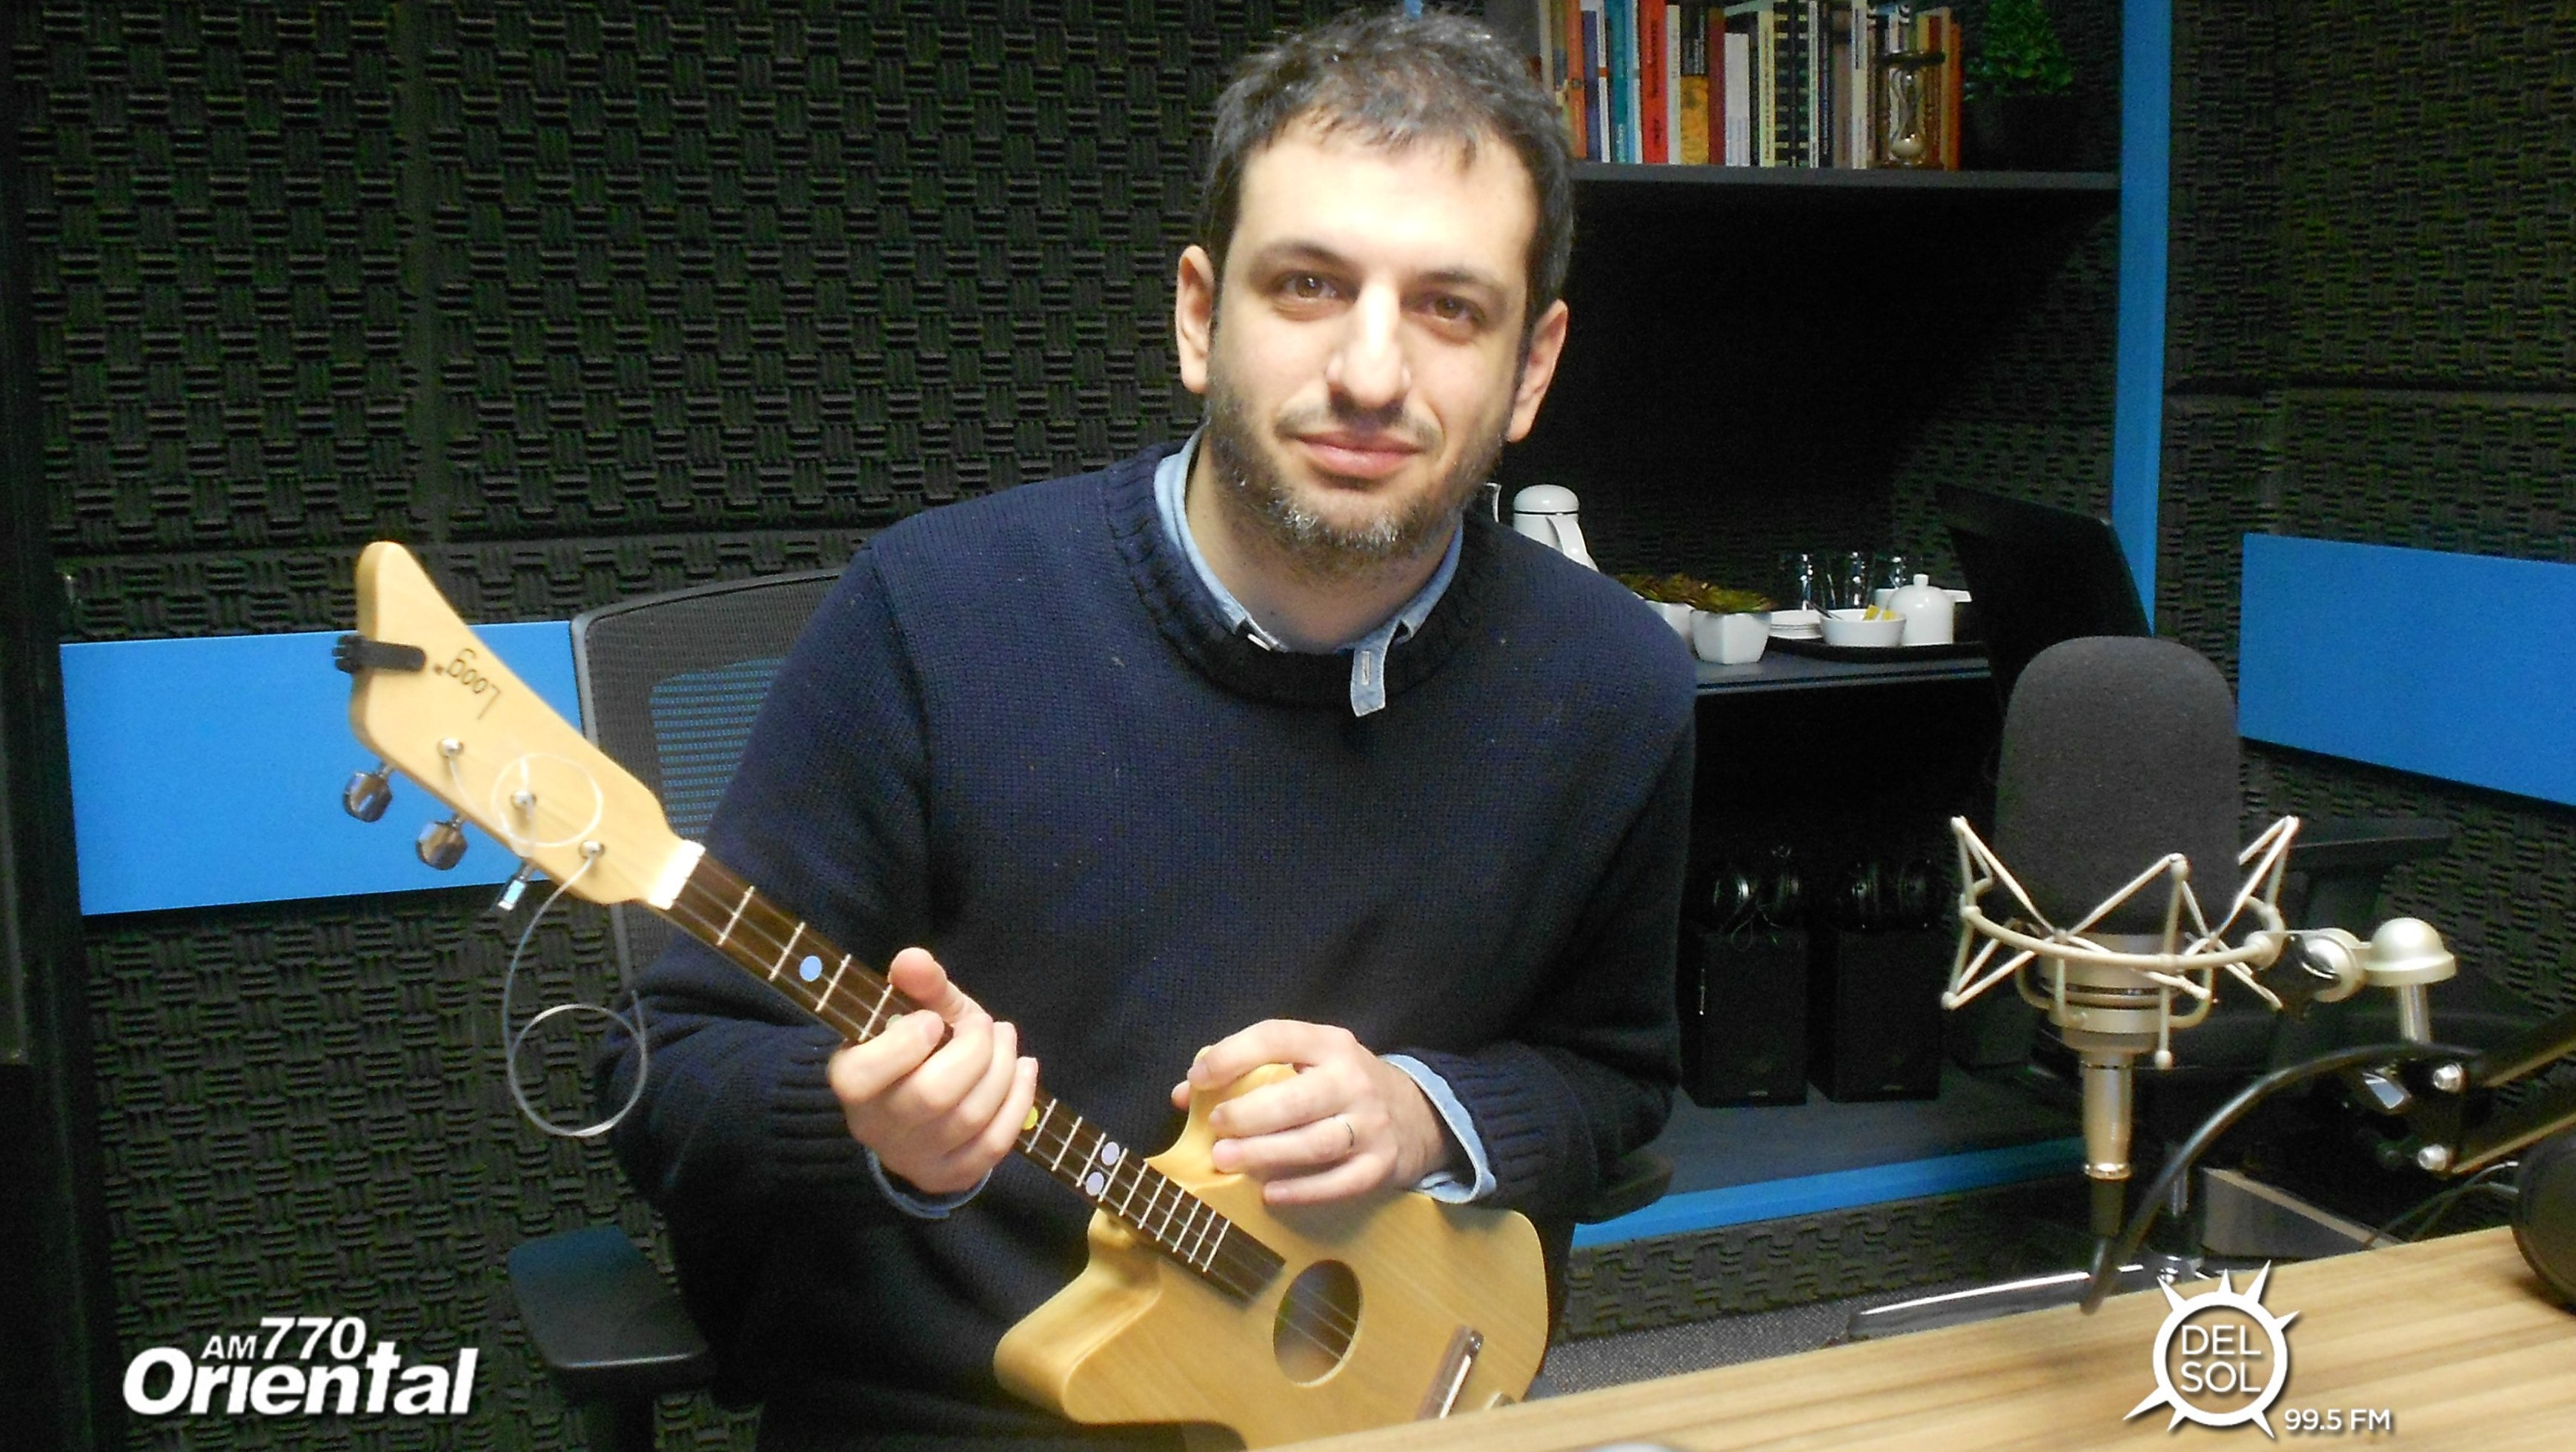  Las guitarras uruguayas que se venden en el MoMA: Entrevista con Rafael Atijas, creador de las loog guitars